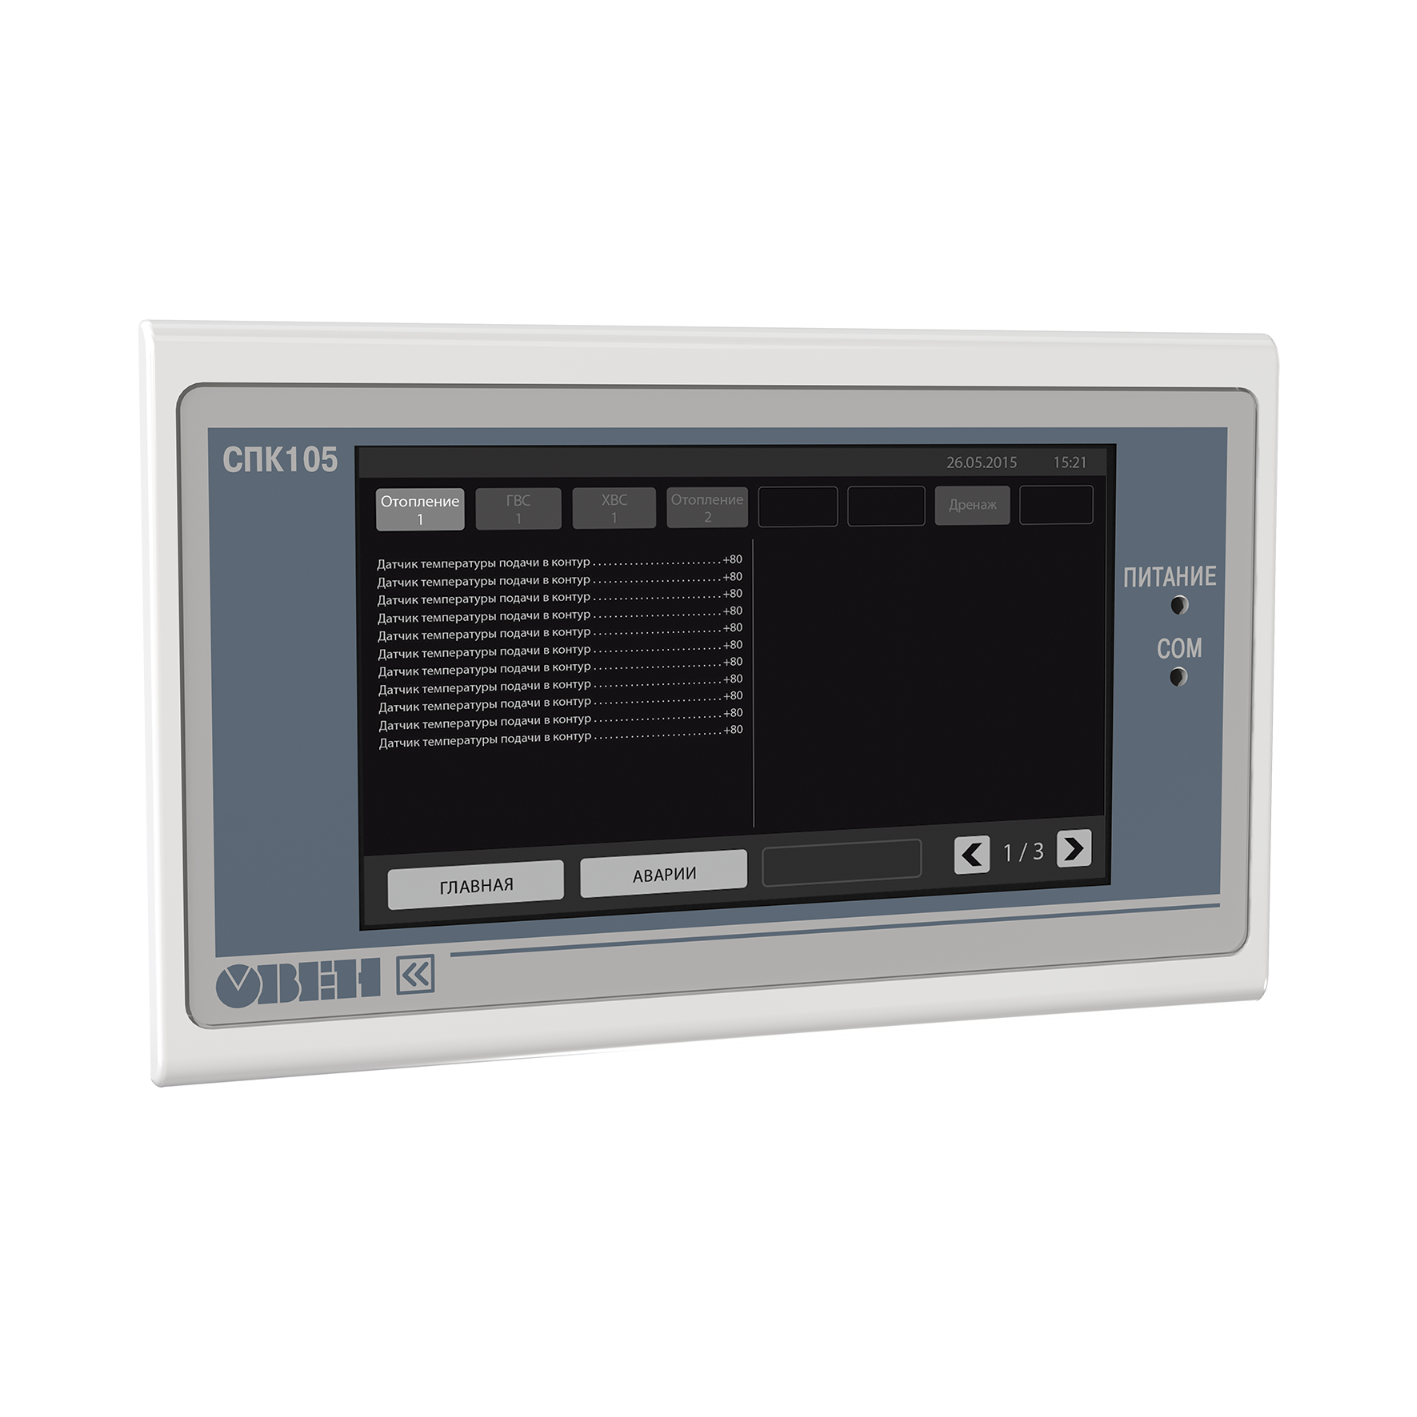 СПК105 Контроллер с сенсорным экраном 4.3” для локальных систем